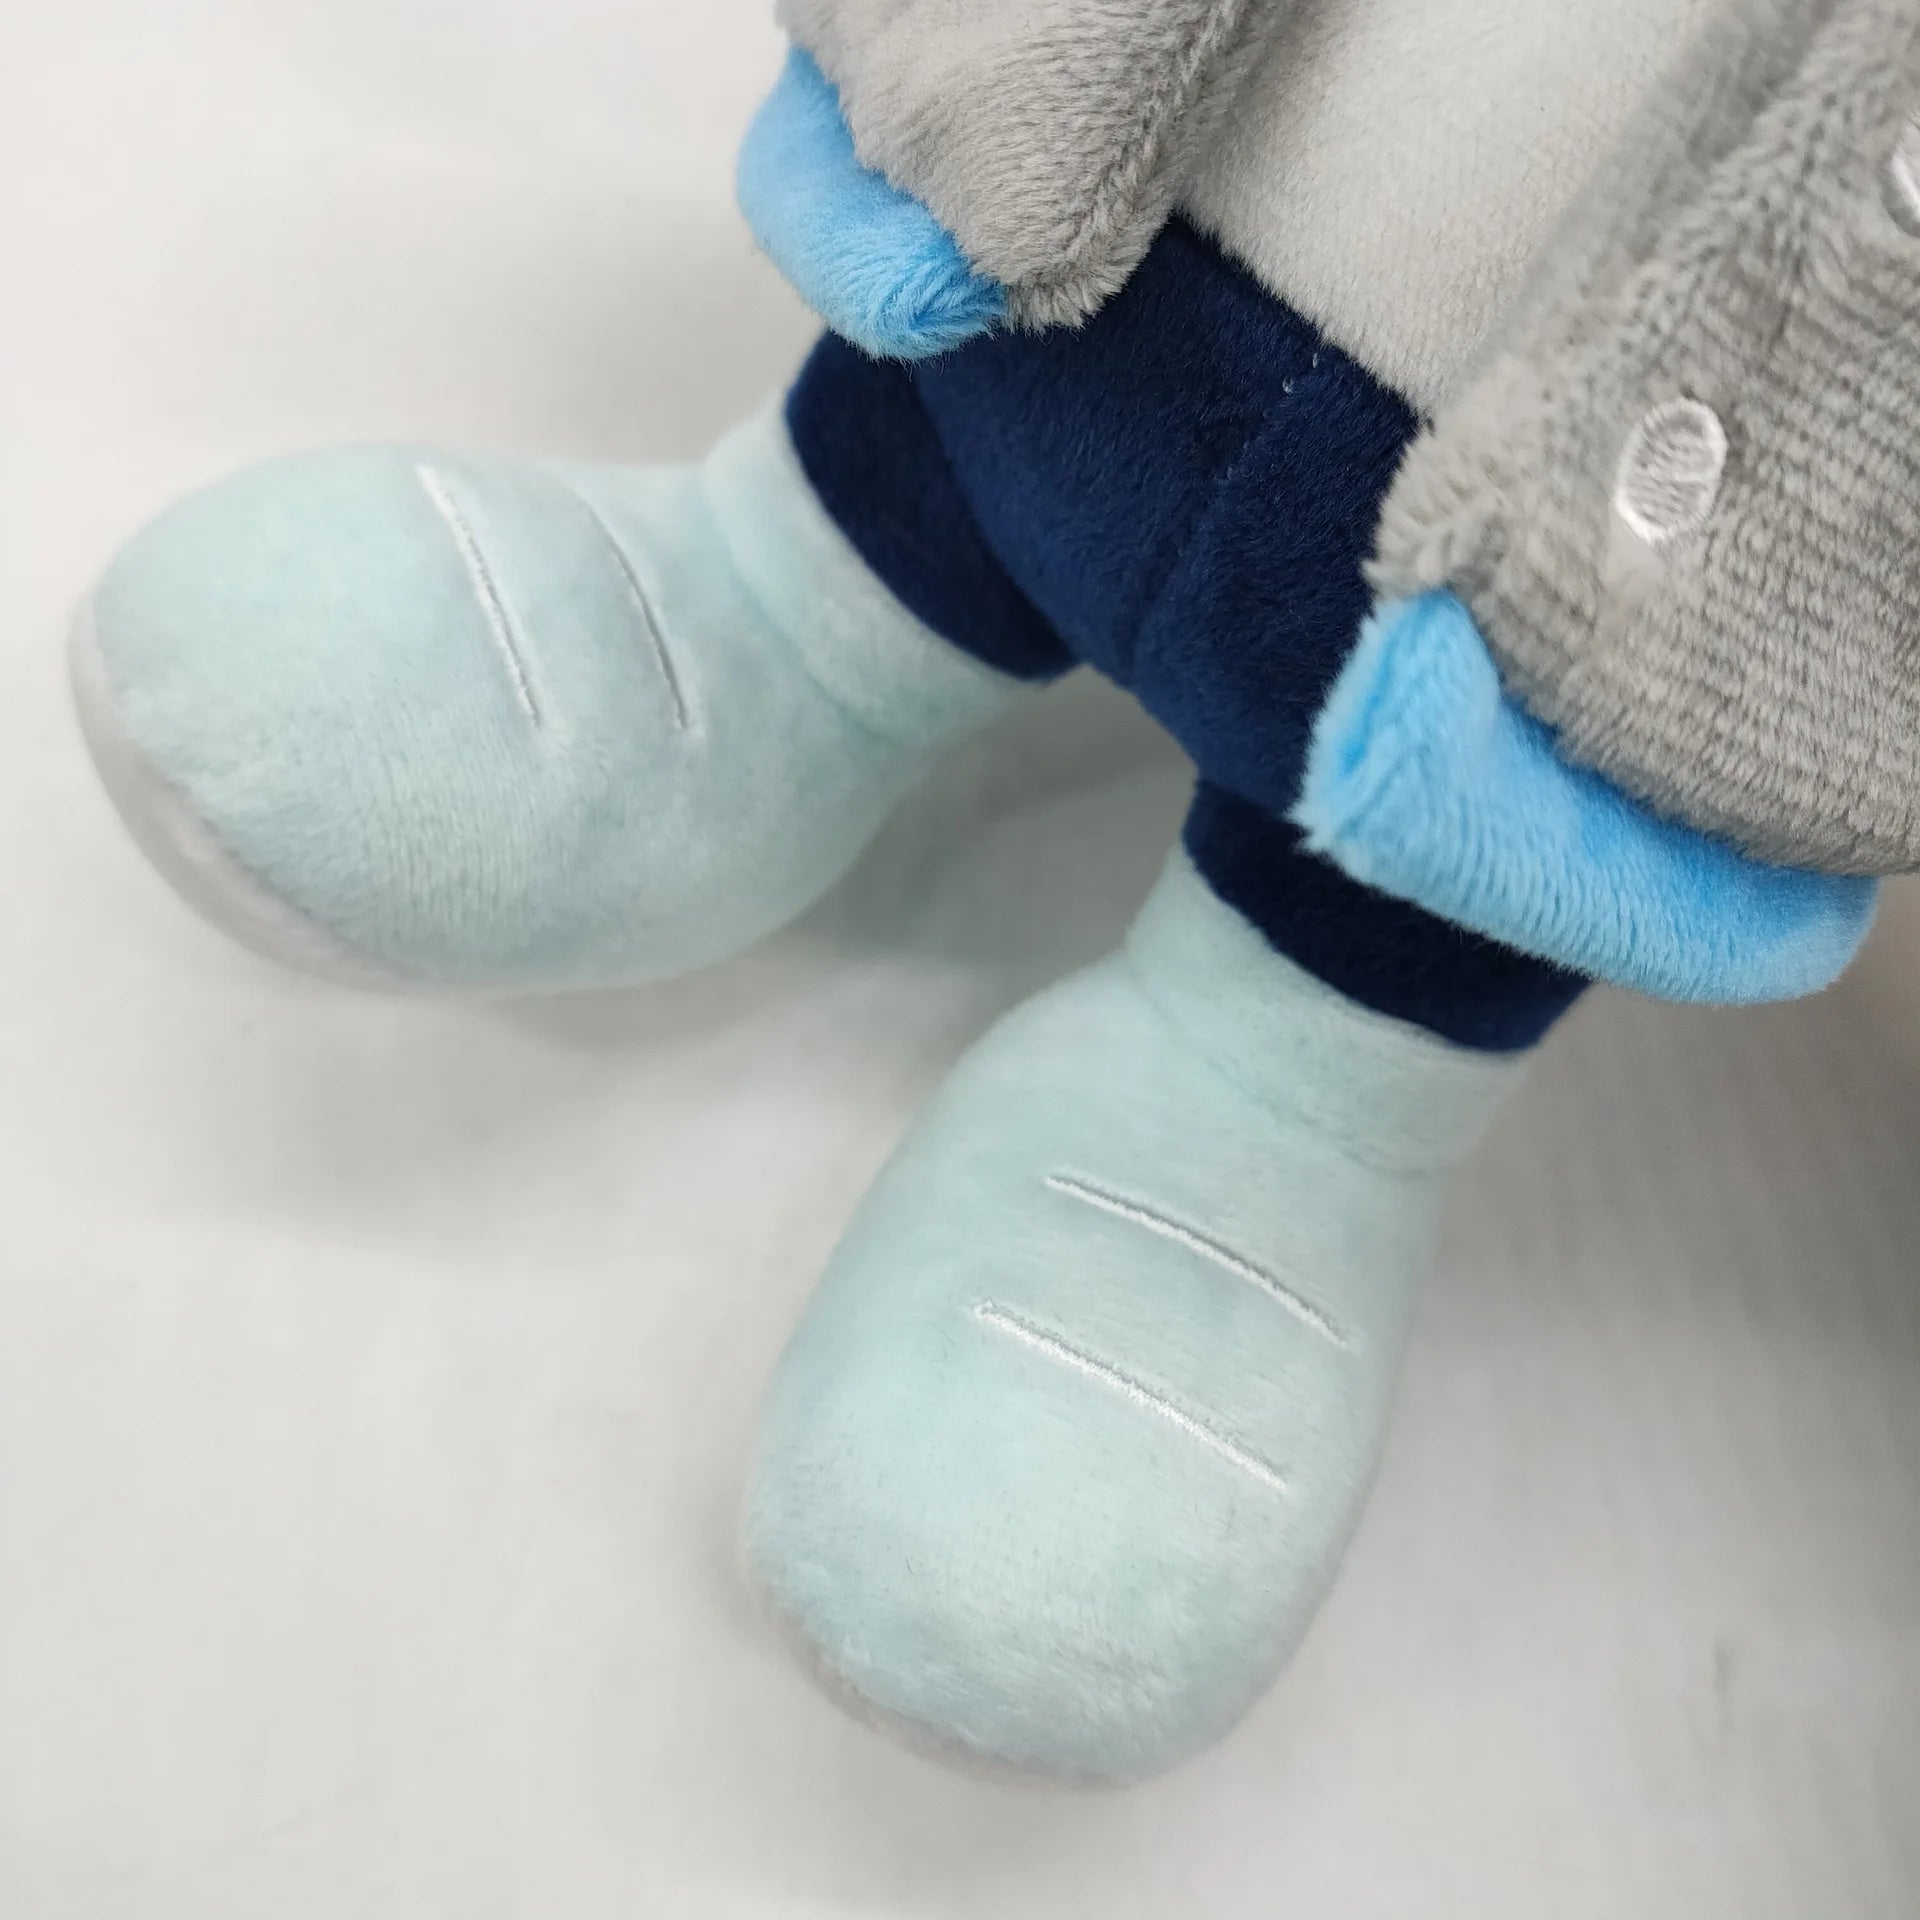 26CM Kanye Teddy Bear Plush Toy  Bear Dolls Stuffed Soft Toy - ToylandEU